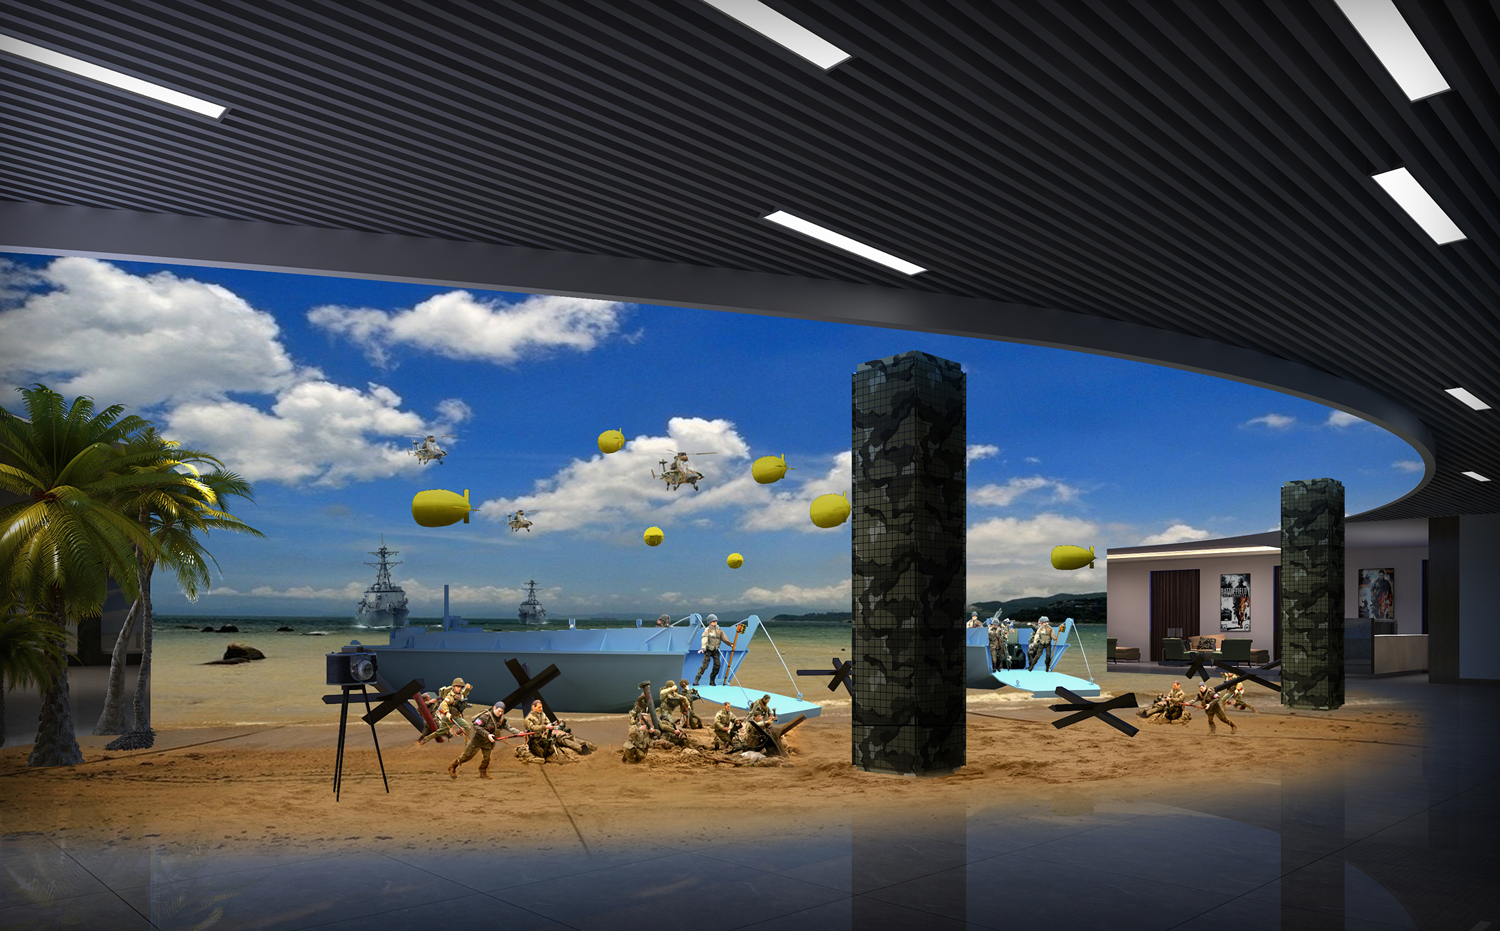 四层奥马哈海滩登陆艇场景拍摄区